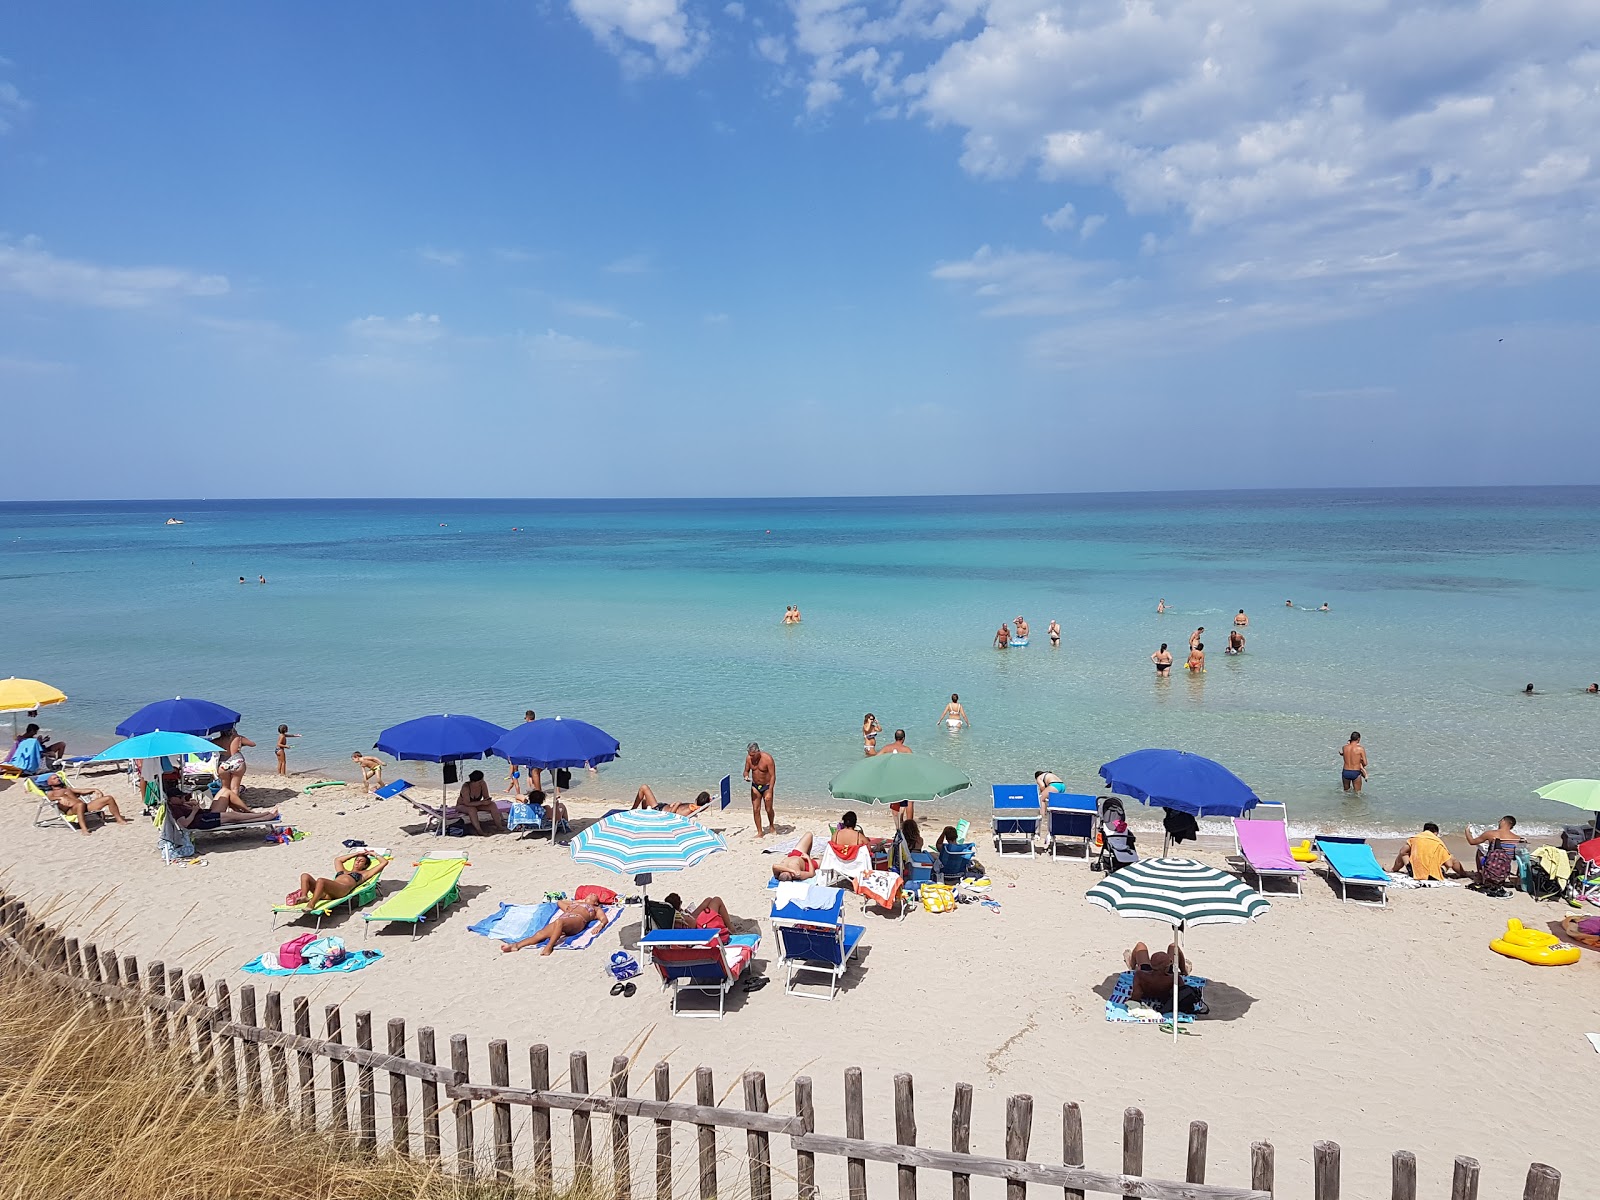 Spiaggia di Pilone'in fotoğrafı parlak kum yüzey ile